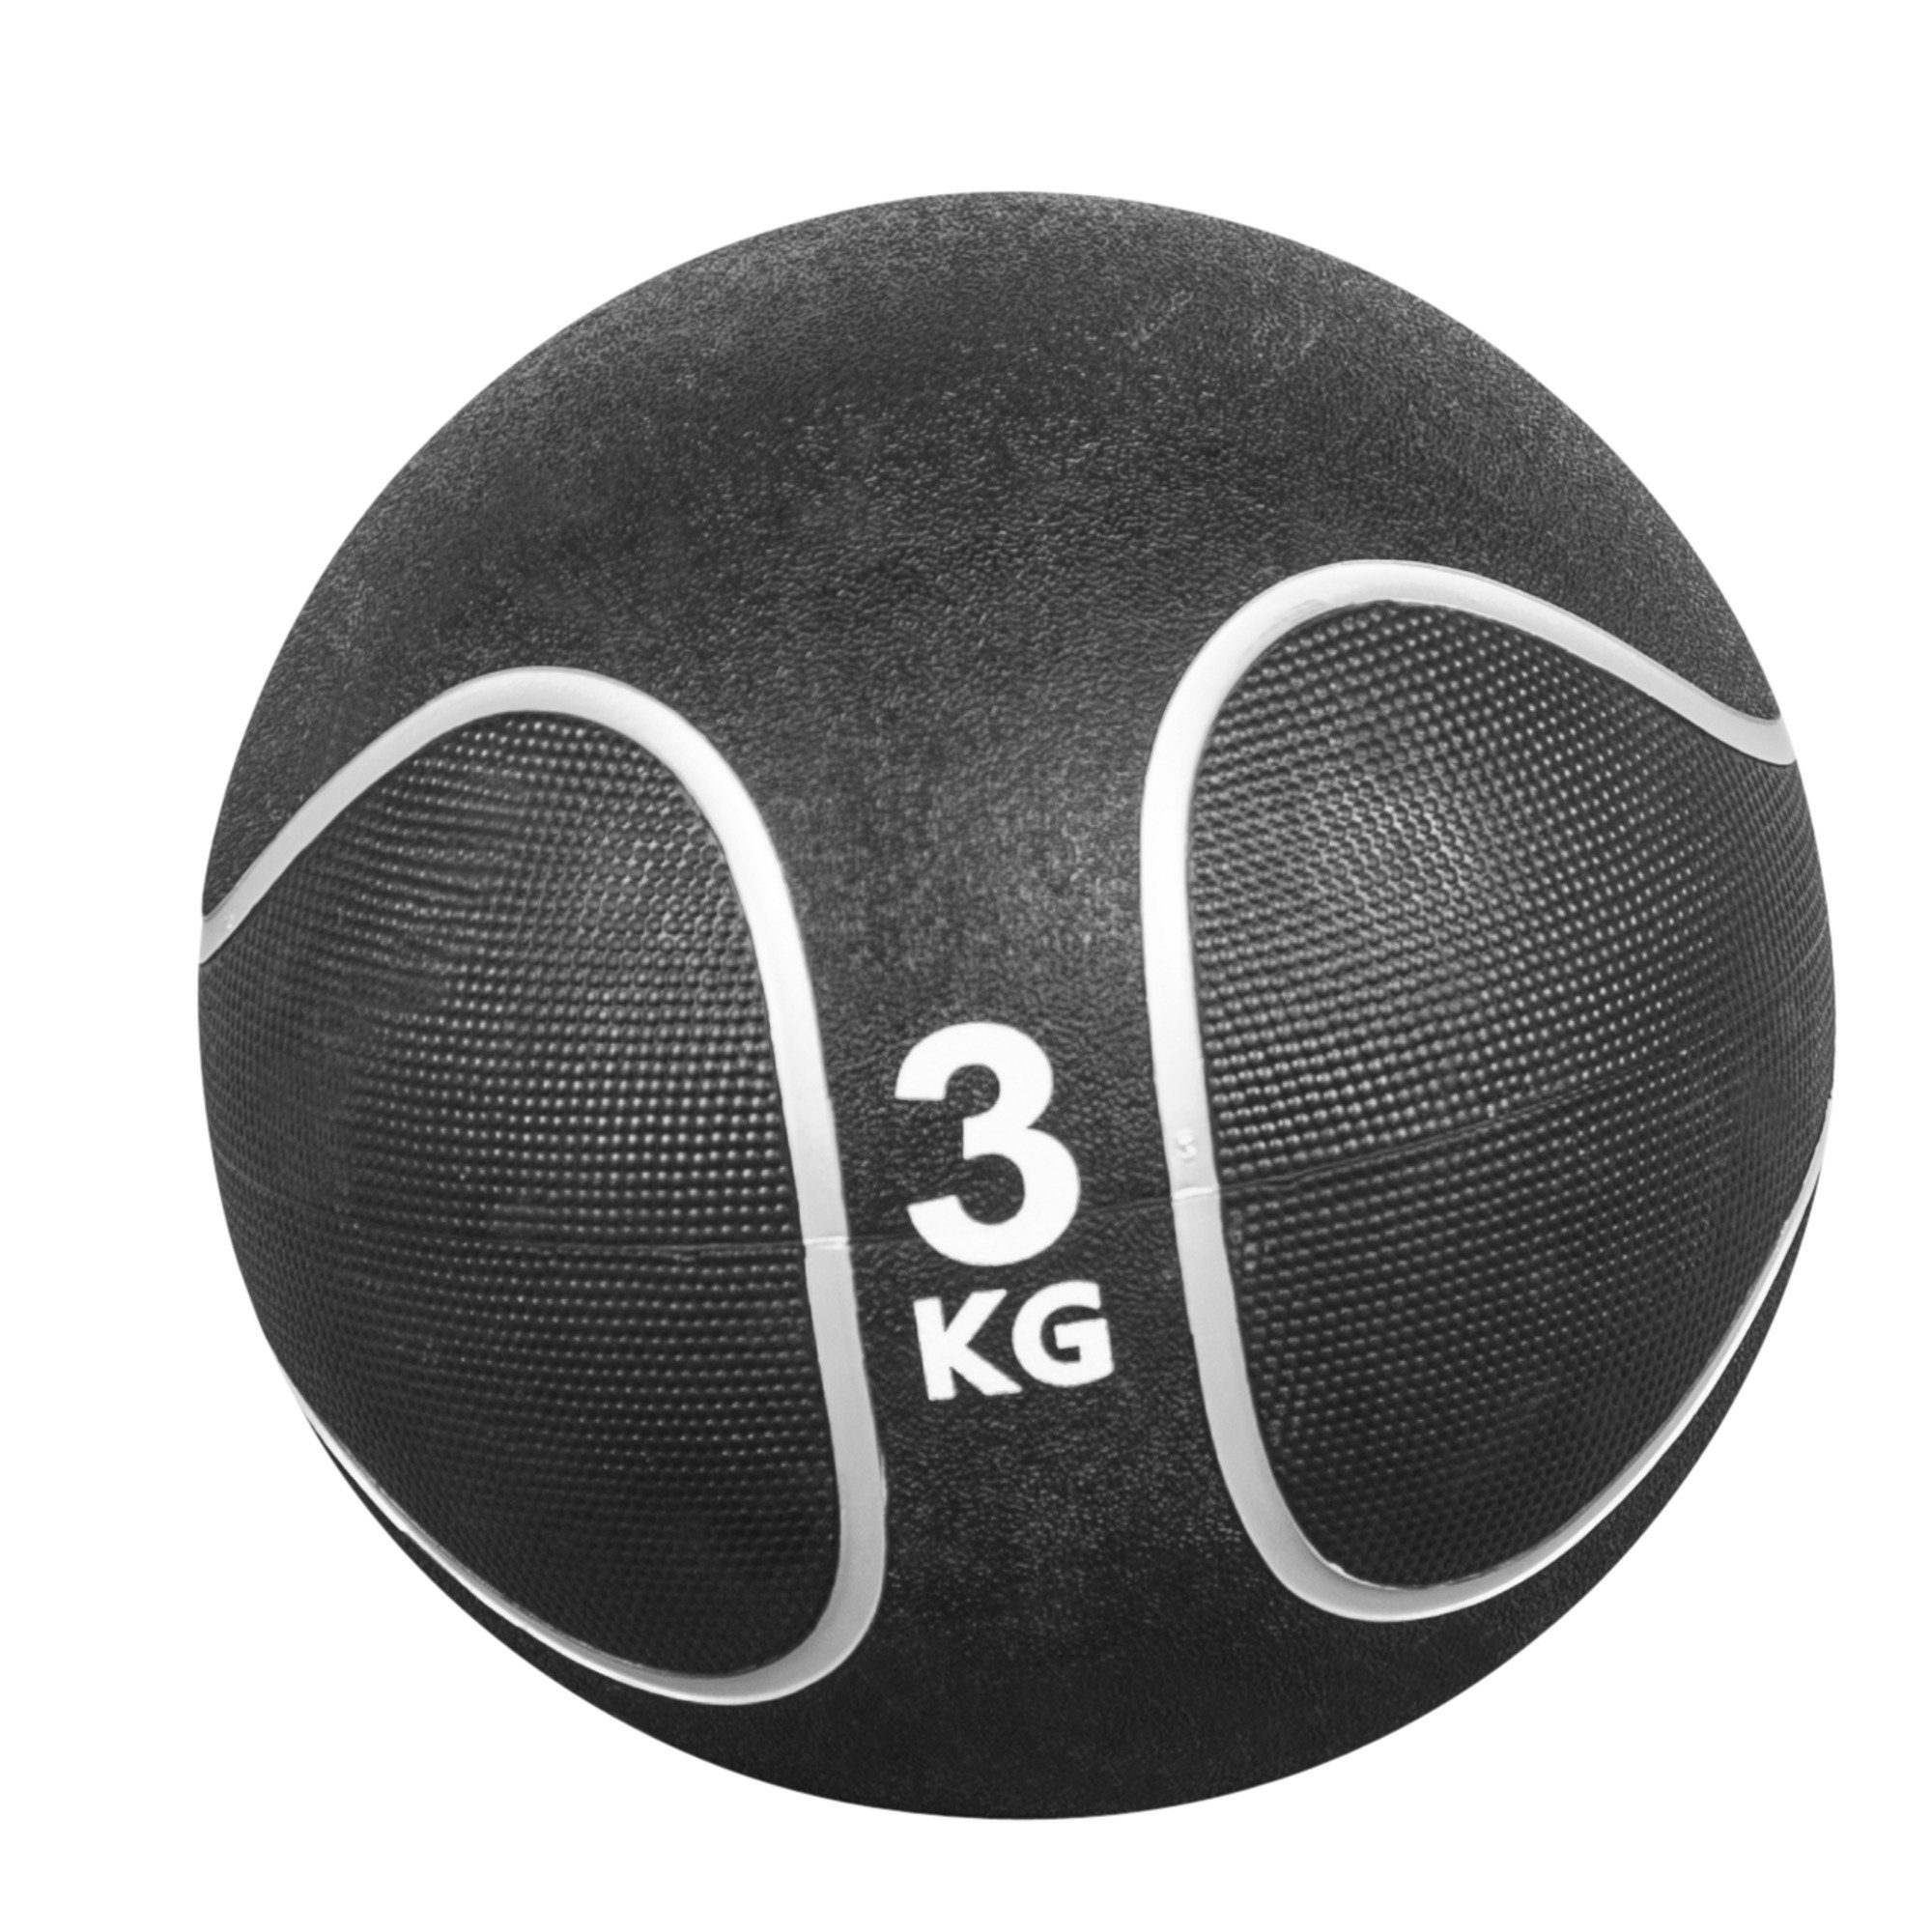 GORILLA SPORTS Medizinball Einzeln / Set, Ø 23 oder 29 cm, rutschfest, aus Gummi, Fitnessball 3 KG